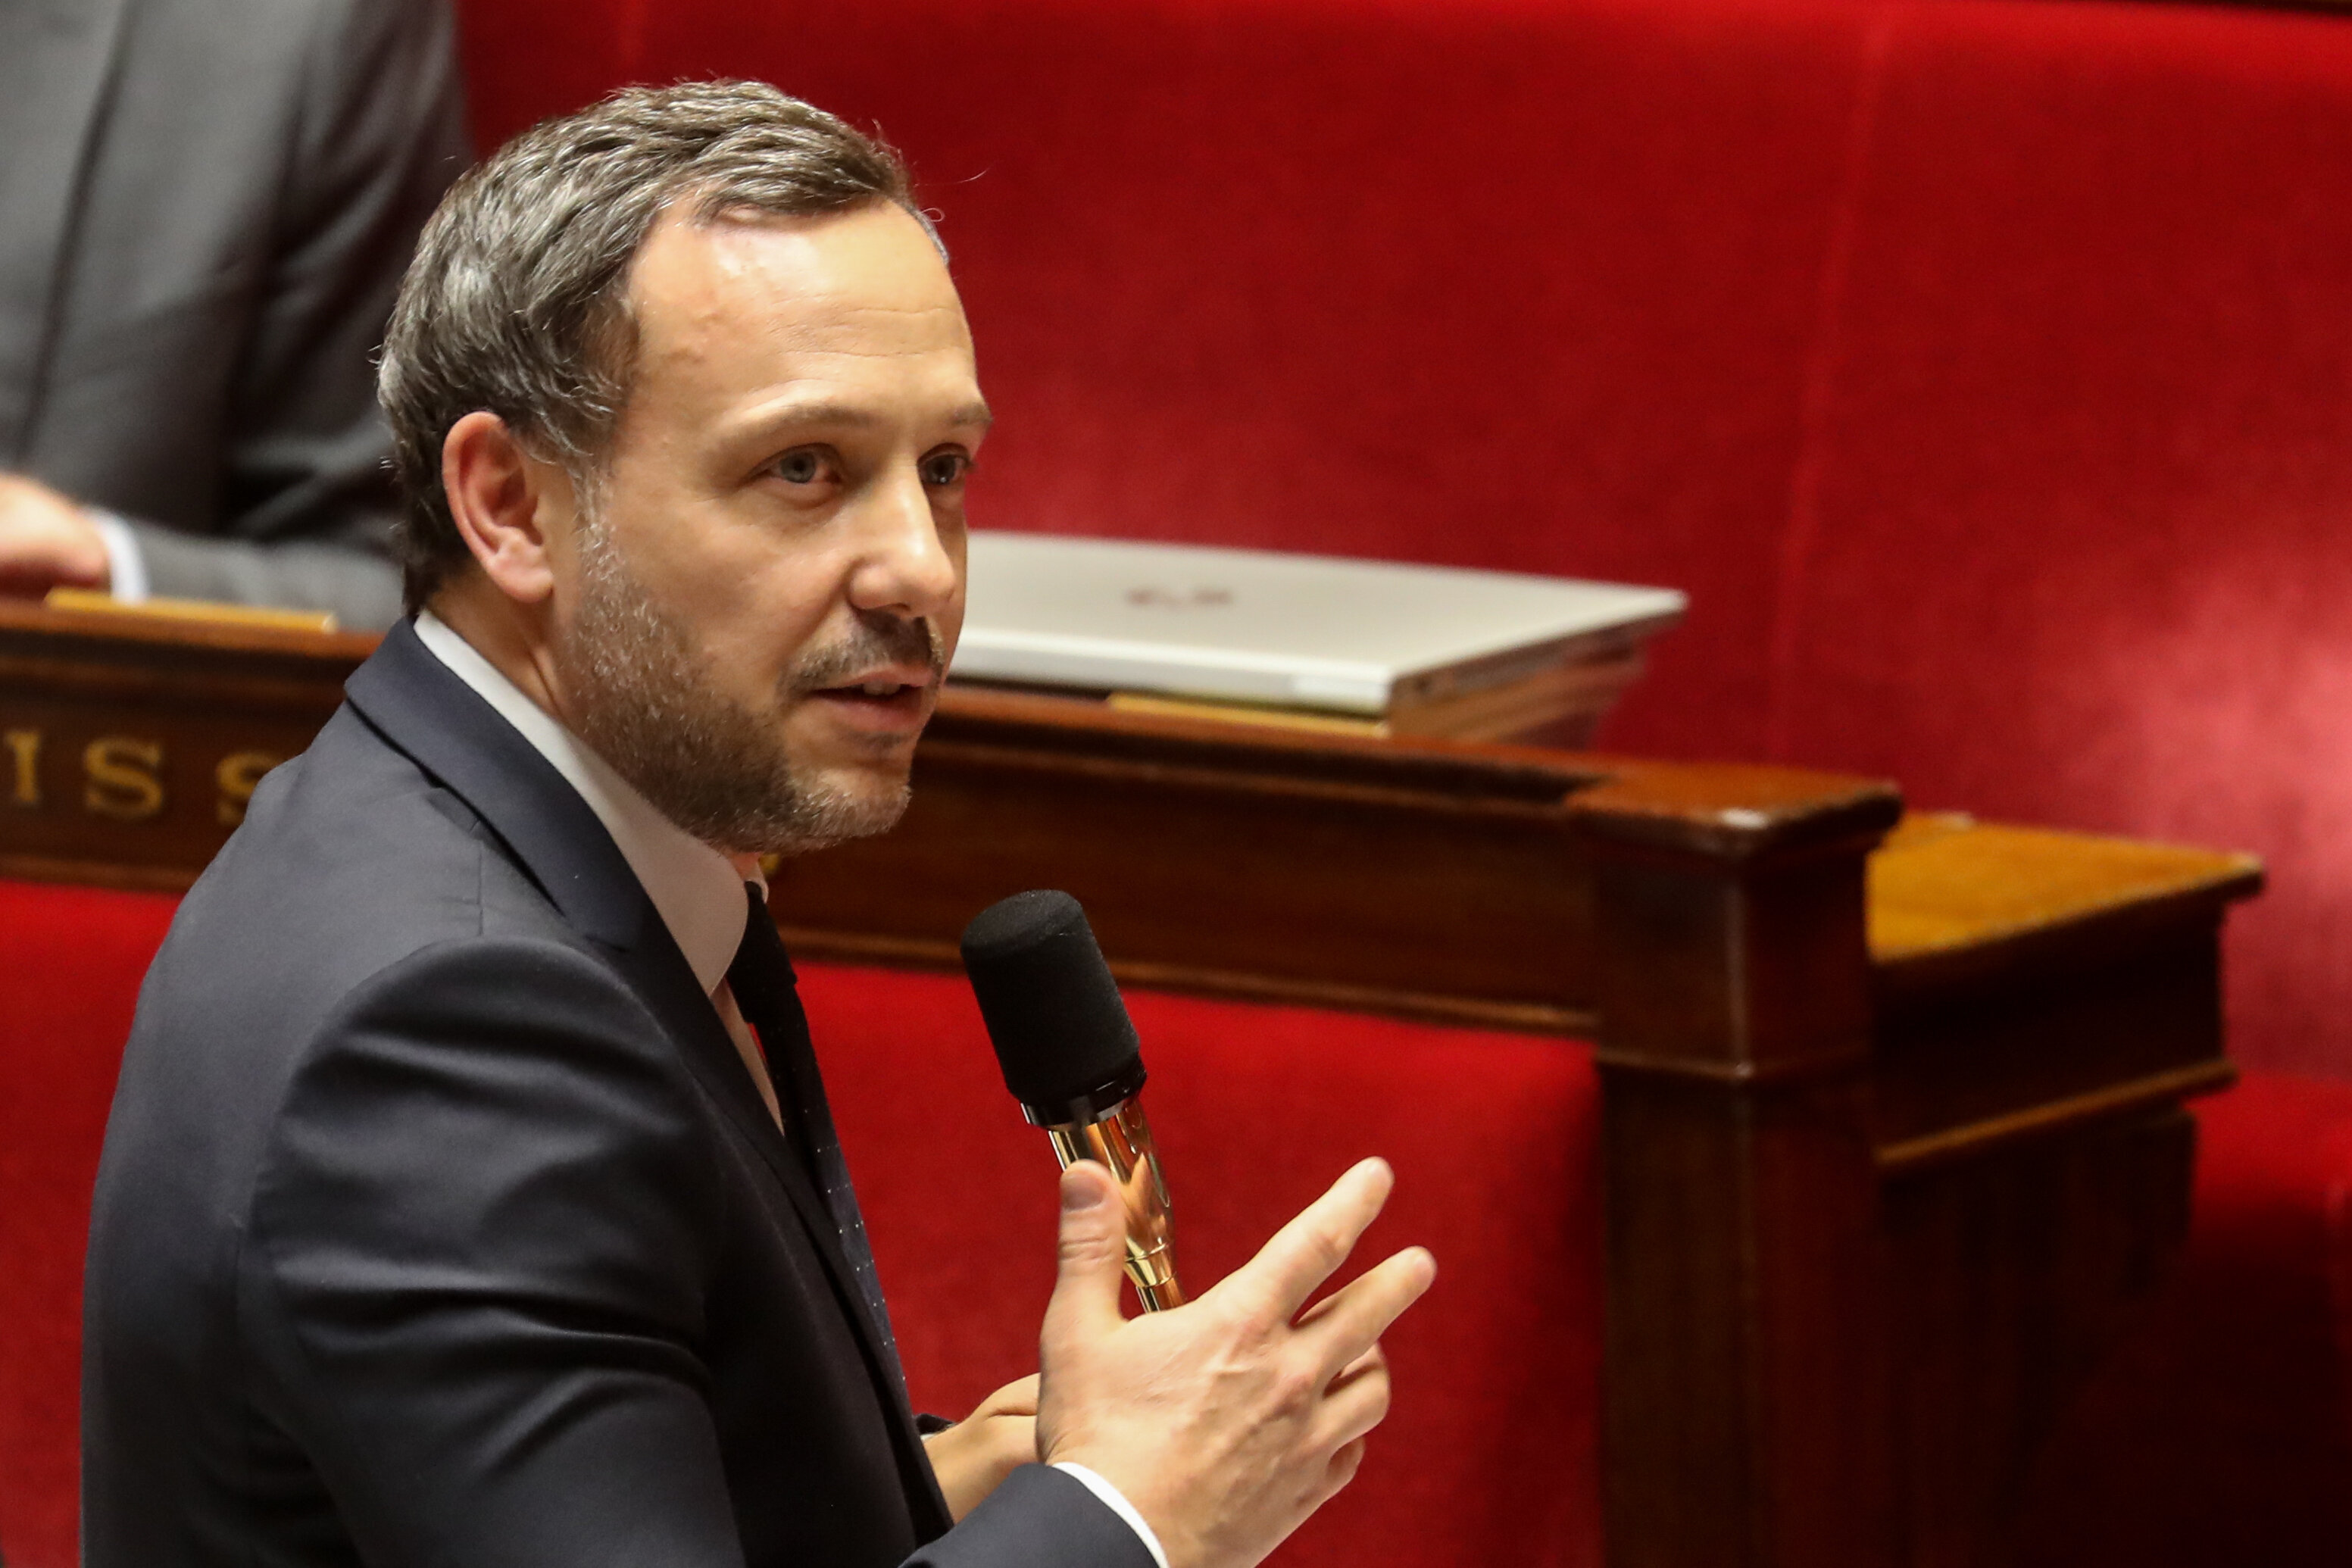 #MeTooInceste : Adrien Taquet salue un mouvement "courageux", qu'il faut "accompagner"